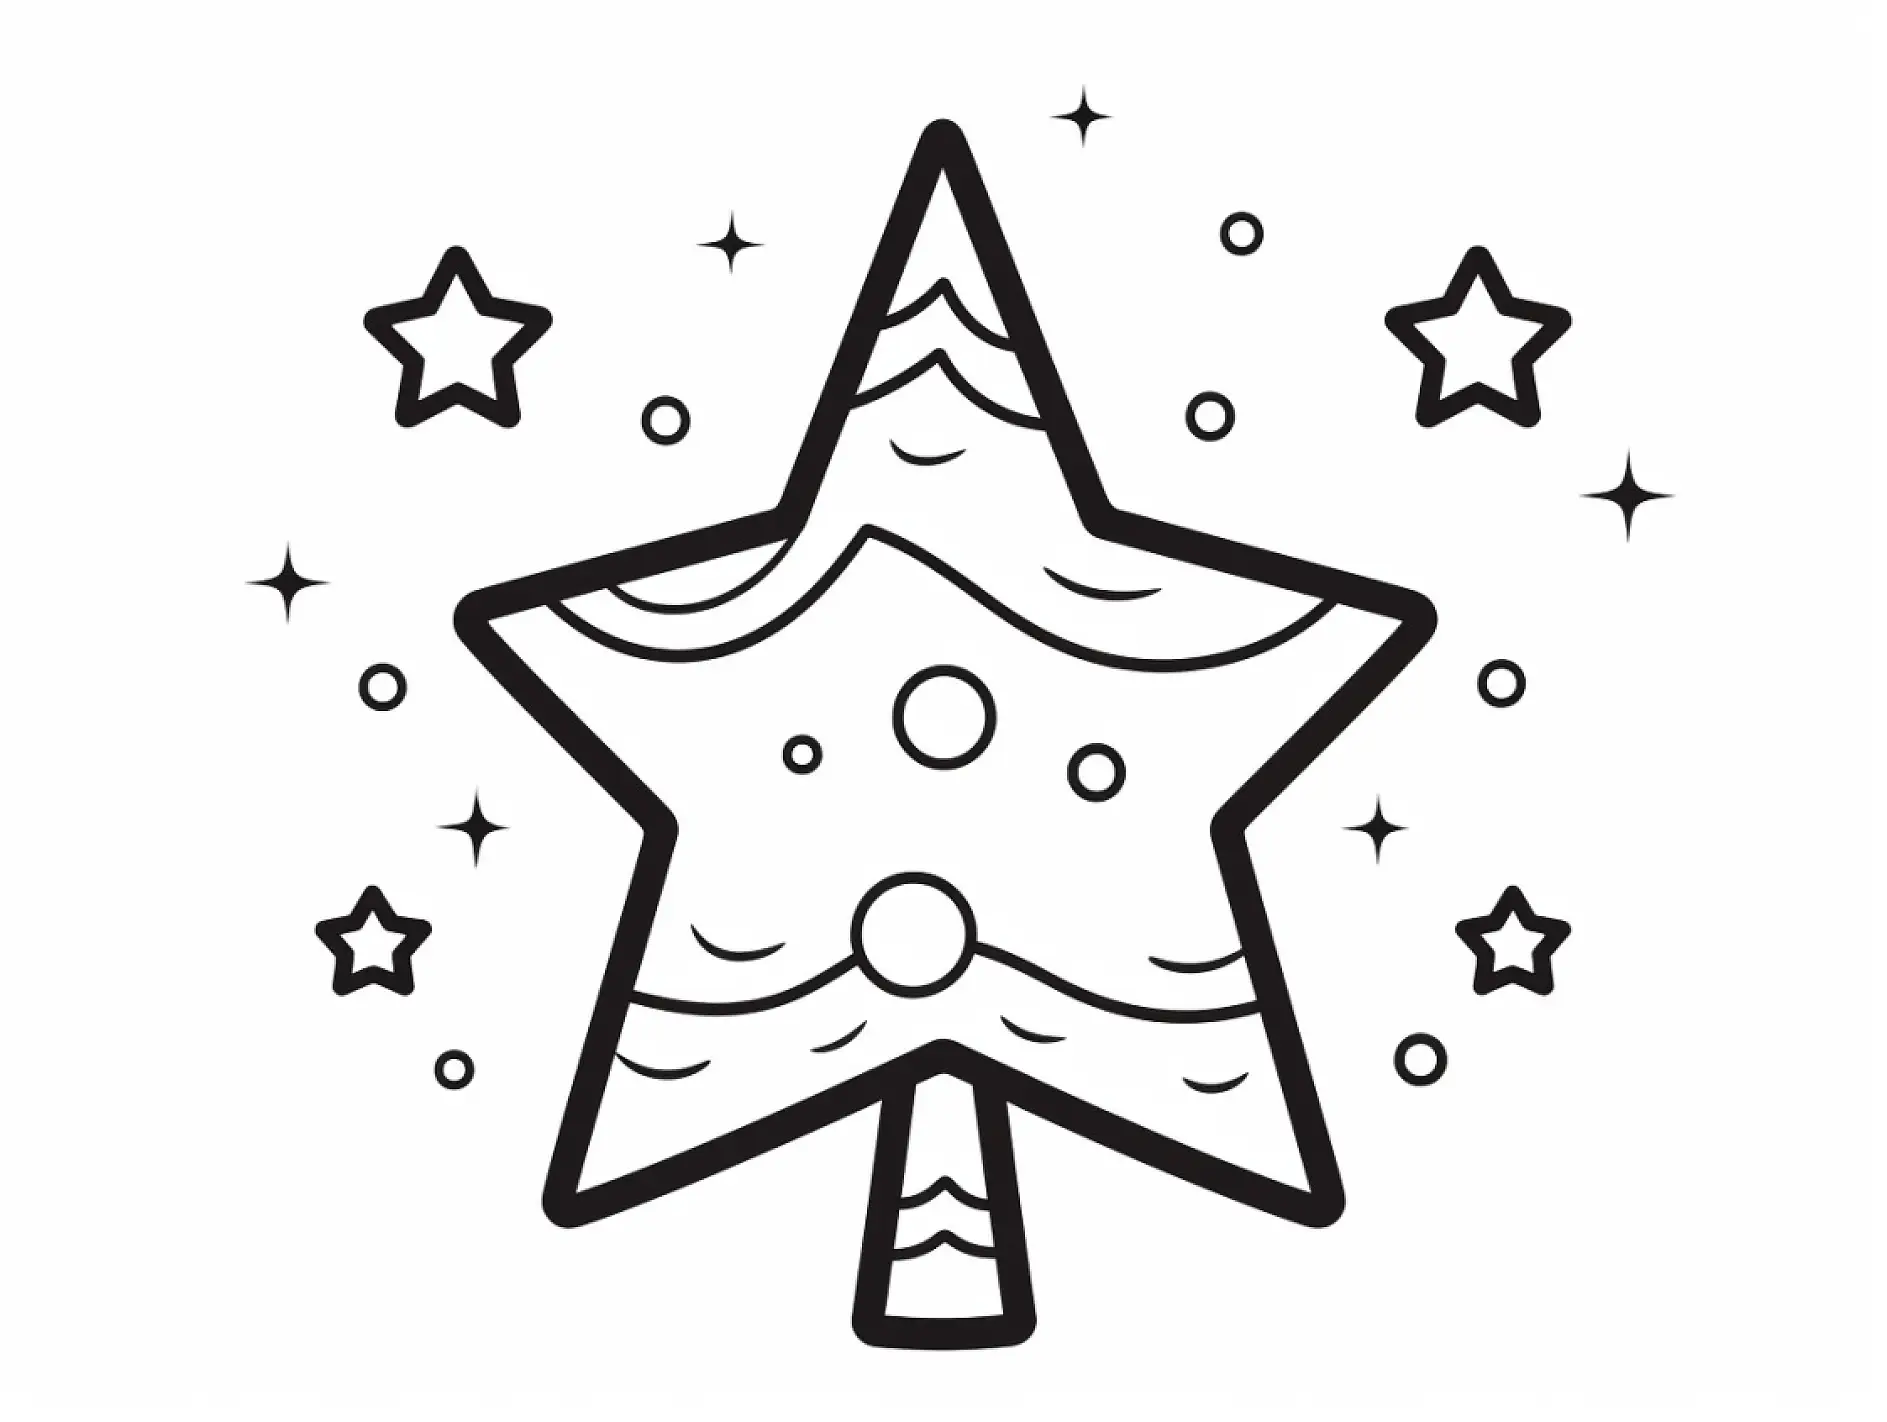 Ausmalbild Stern mit Punkten und kleineren Sternen